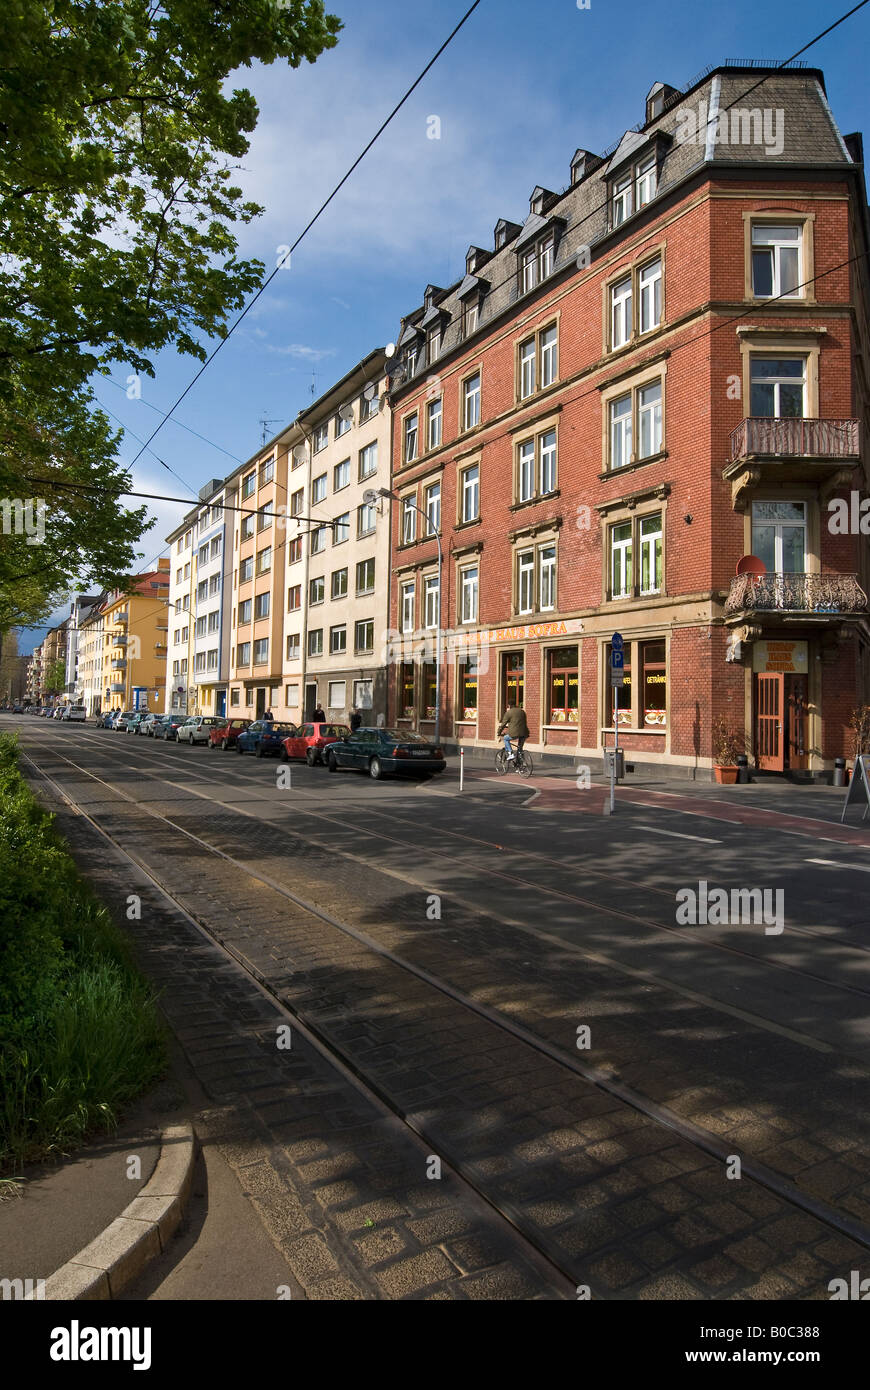 Blick entlang der Straßenbahnschienen und die Straße mit dem Namen "Kaiser- Wilhelm-Ring" in der "Neustadt" Teil der Stadt Mainz in Deutschland  Stockfotografie - Alamy